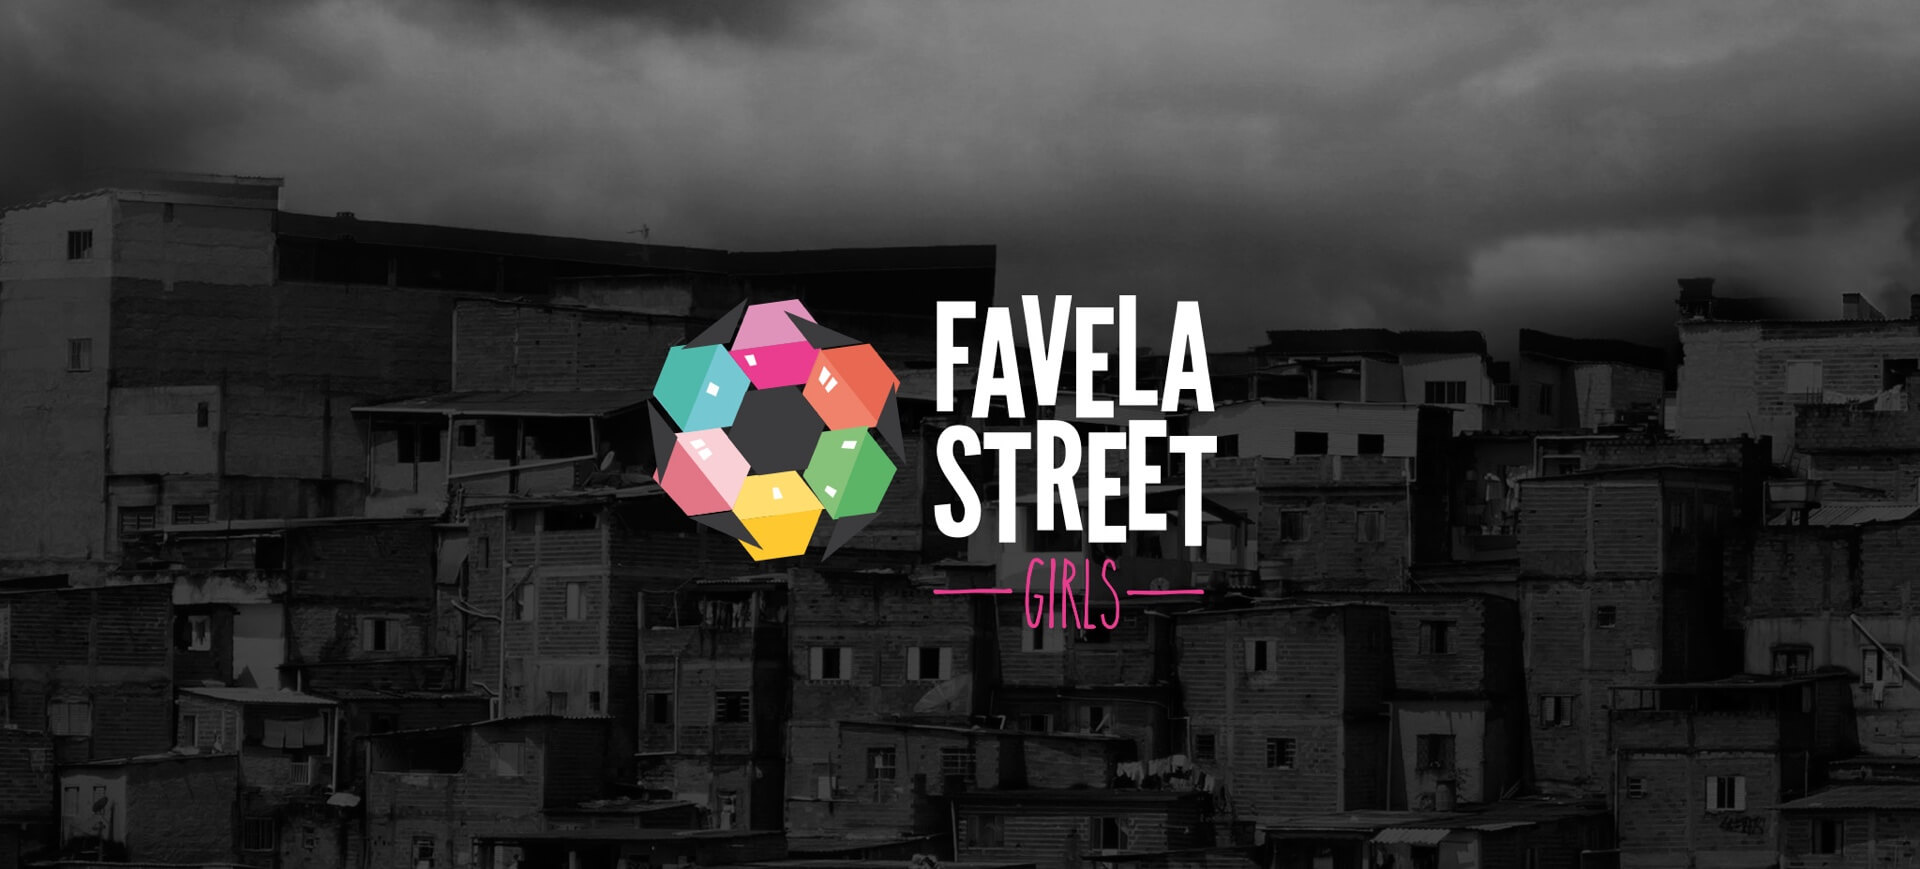 Favela Street Girls Logo